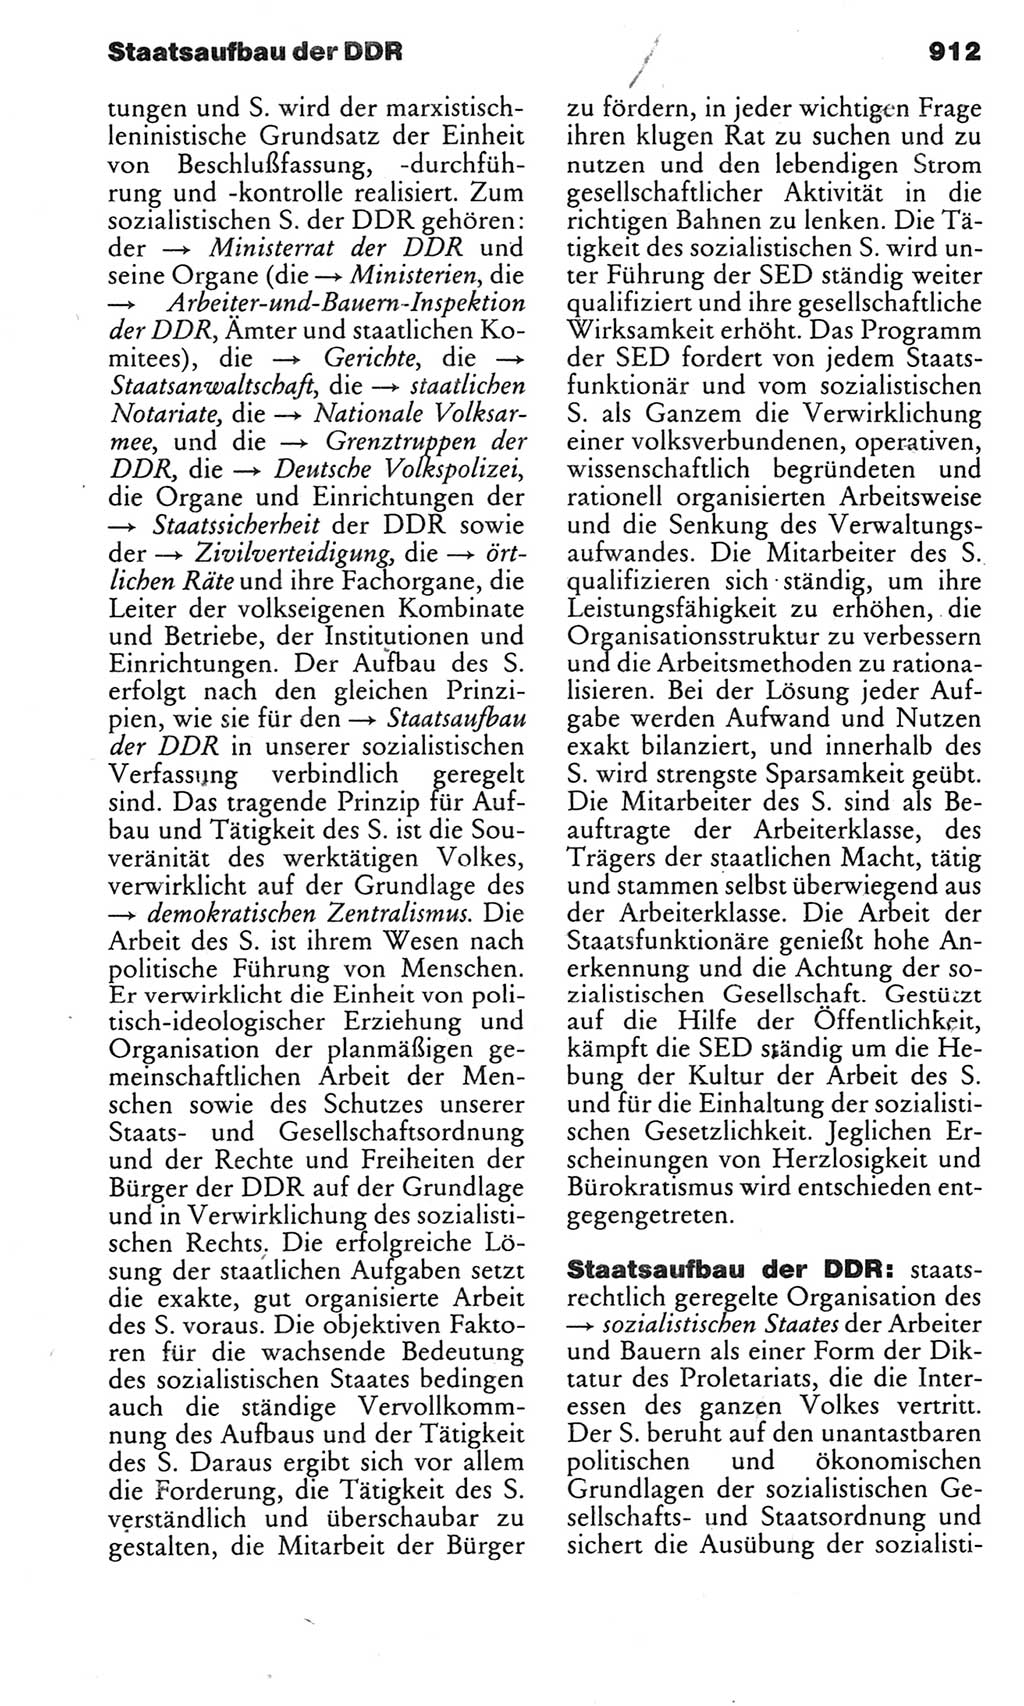 Kleines politisches Wörterbuch [Deutsche Demokratische Republik (DDR)] 1983, Seite 912 (Kl. pol. Wb. DDR 1983, S. 912)